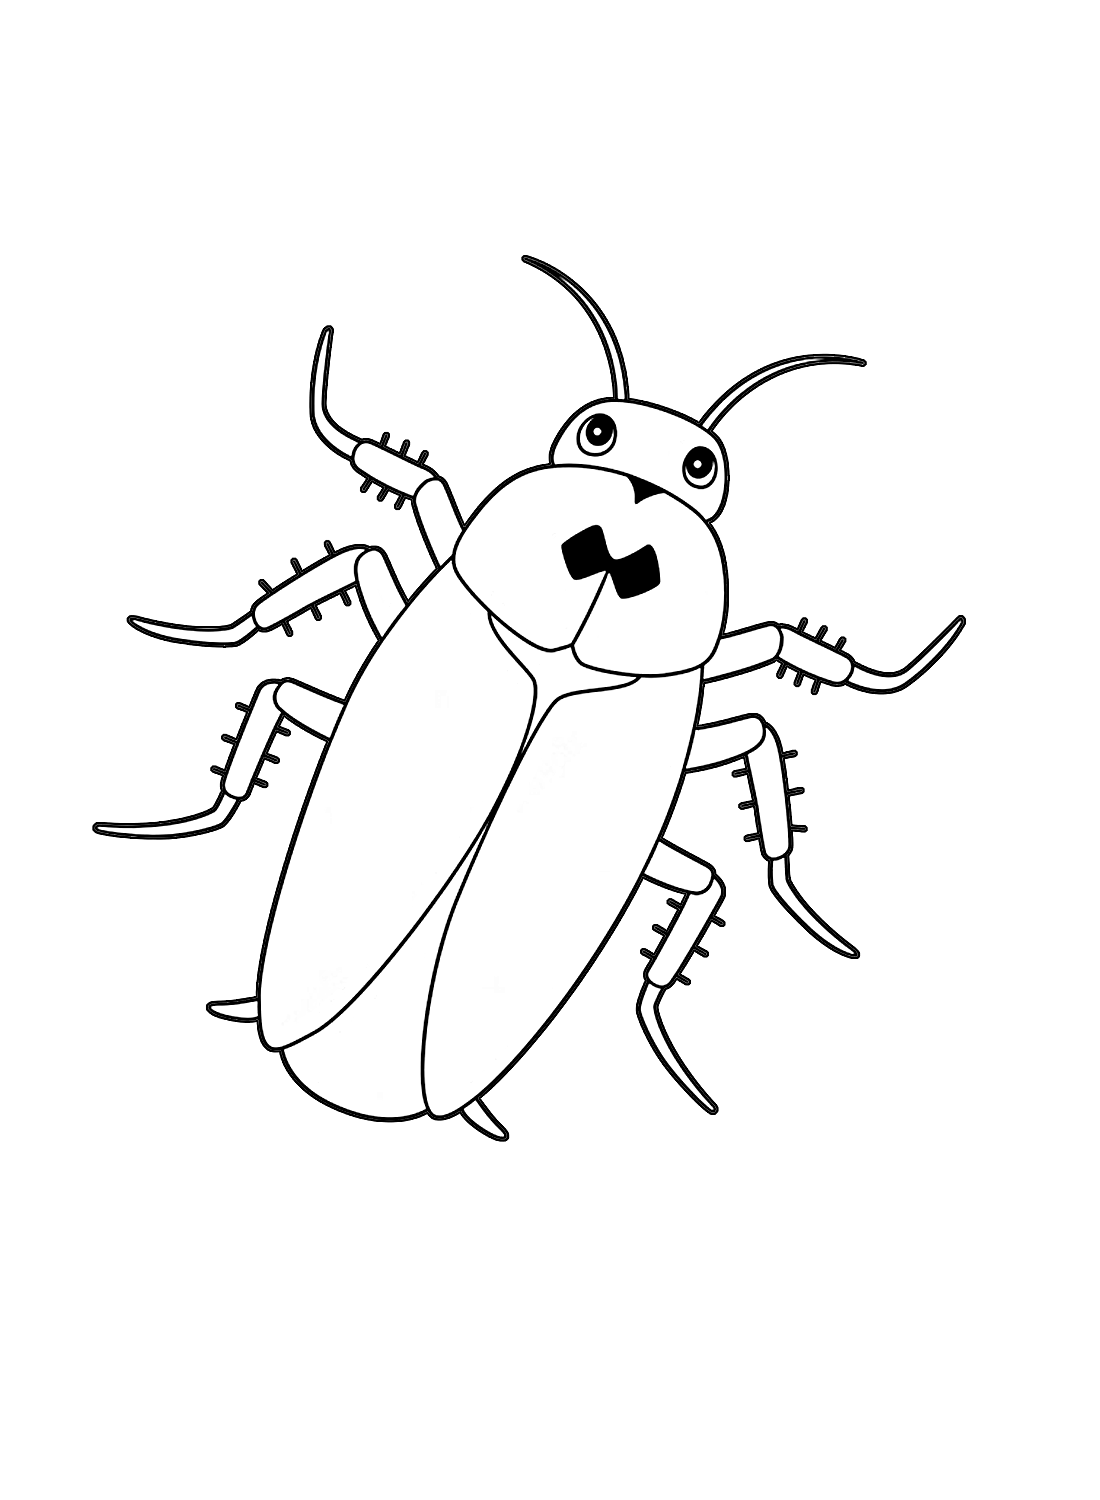 Il simpatico scarafaggio di Scarafaggio